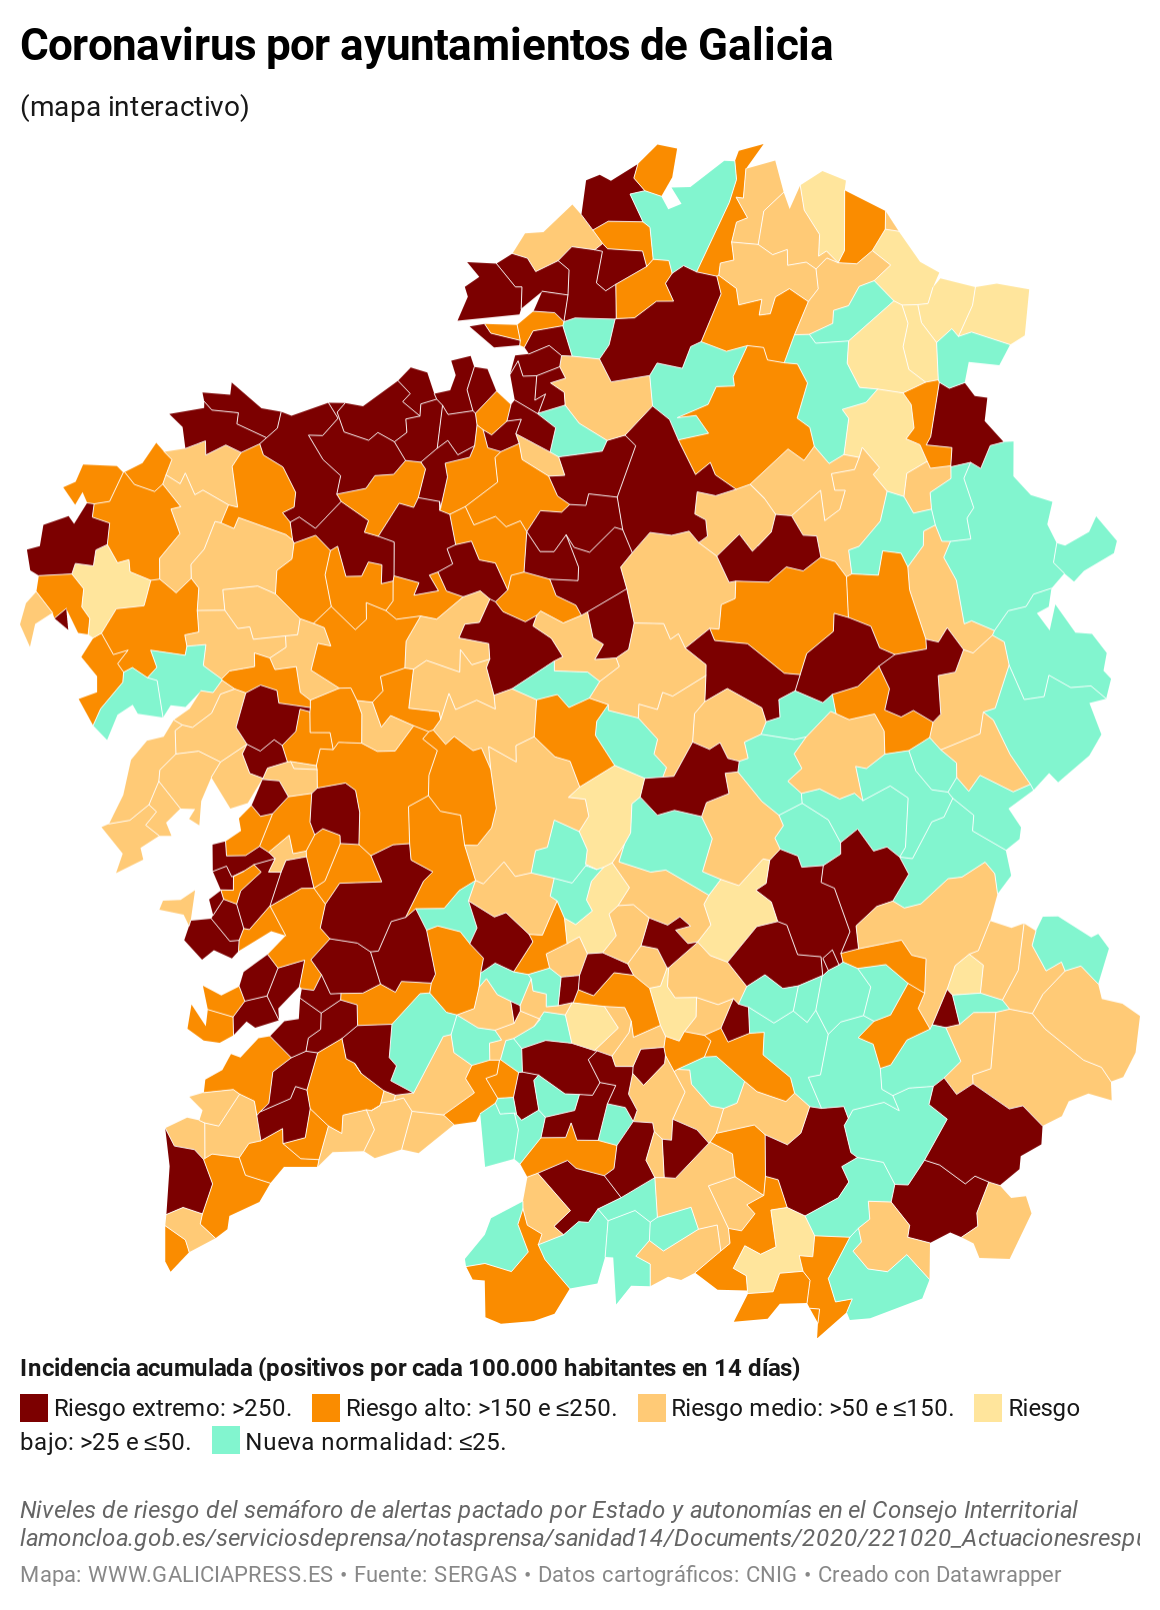 KV7EO coronavirus por ayuntamientos de galicia  (14)